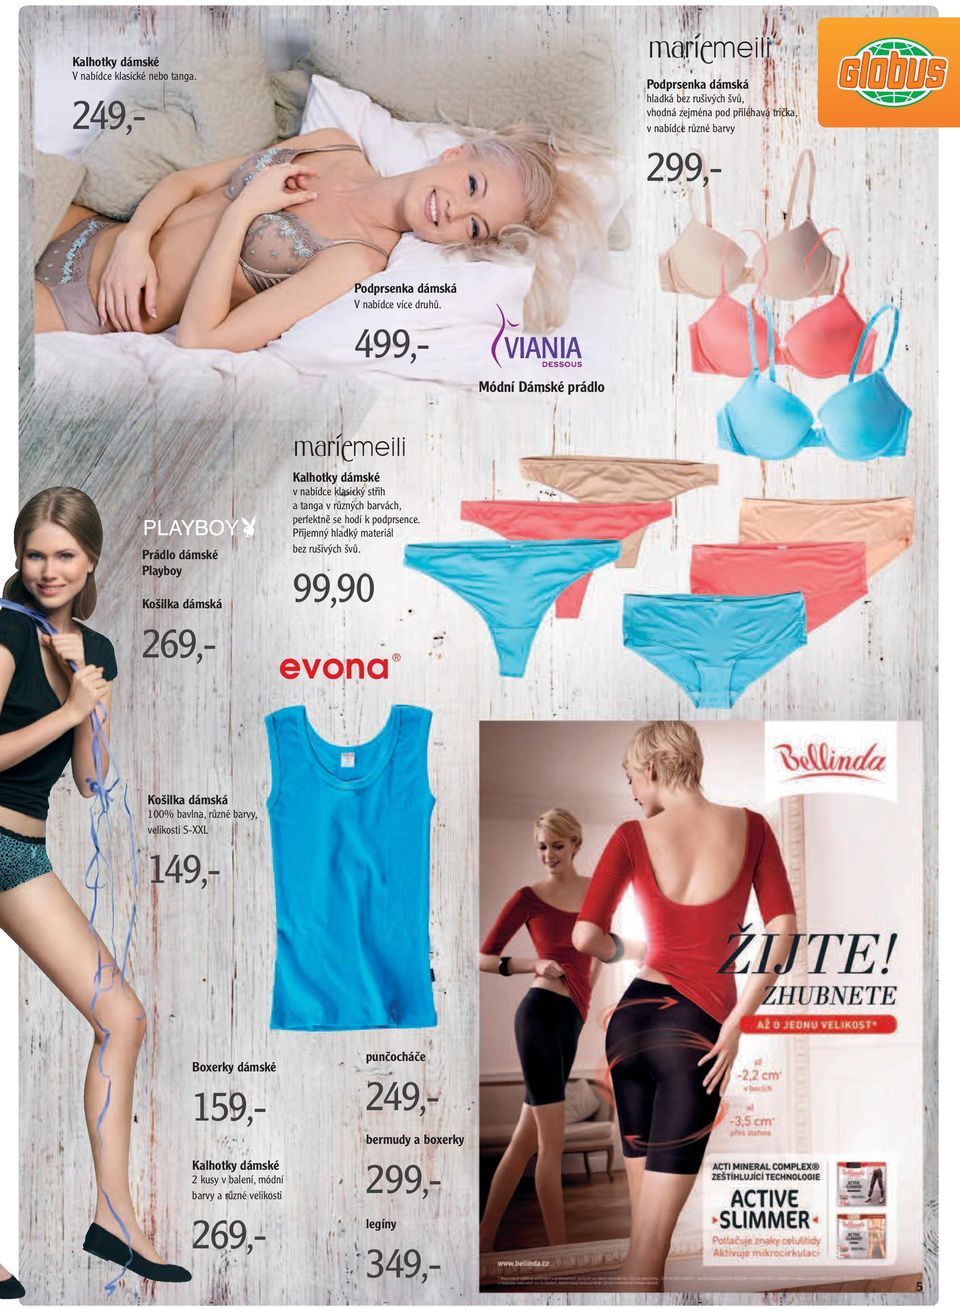 Módní Dámské prádlo Prádlo dámské Playboy Košilka dámská 269,- Kalhotky dámské v nabídce klasický střih a tanga v různých barvách, perfektně se hodí k